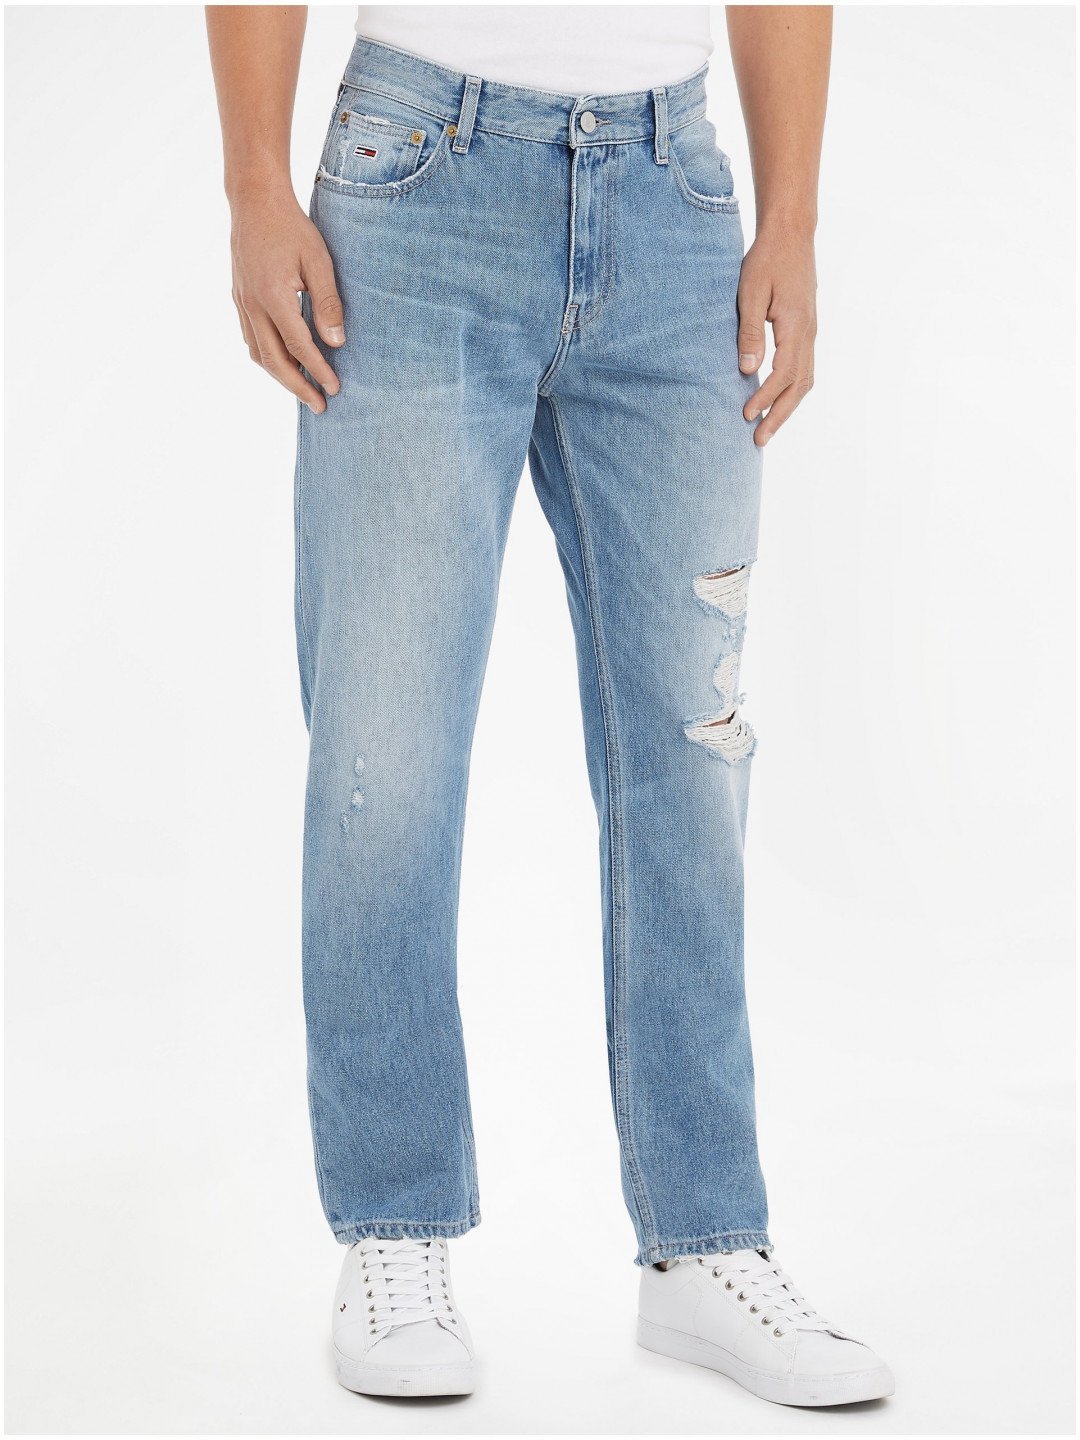 Světle modré pánské straight fit džíny Tommy Jeans